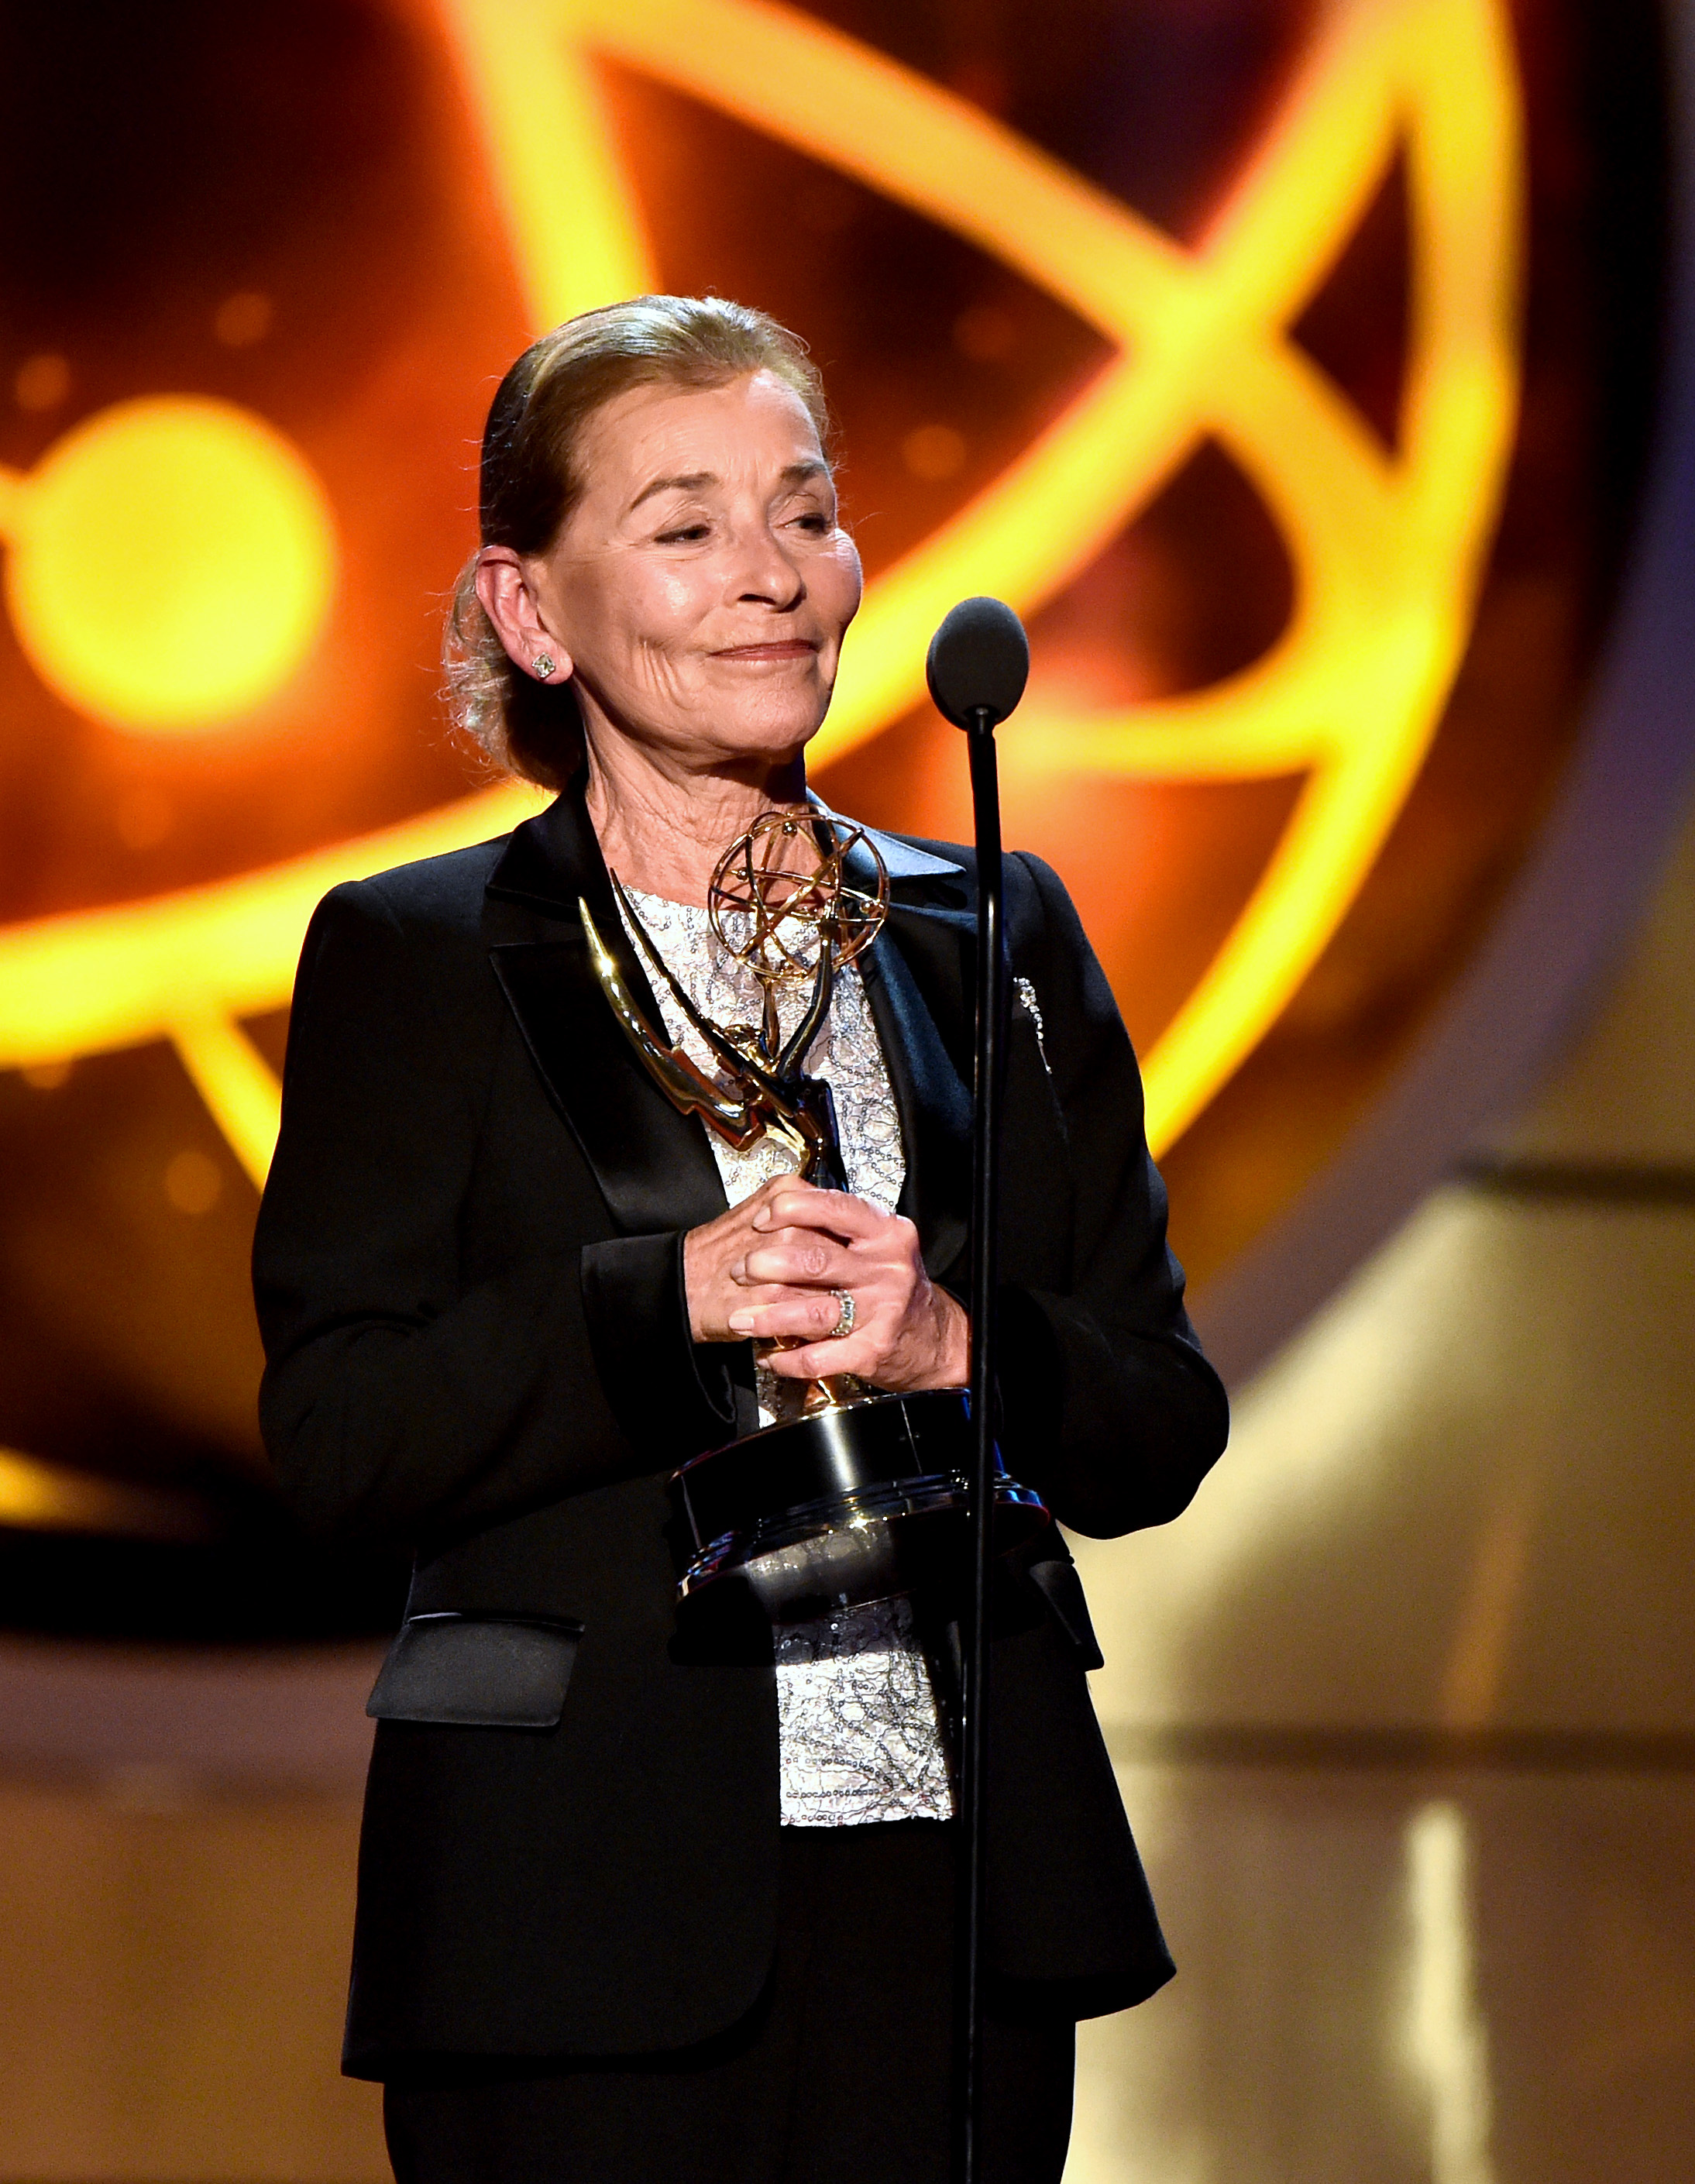 La jueza Judy Sheindlin, posando con su Premio a la Trayectoria en los Premios Emmy en Los Ángeles en 2019 | Fuente: Getty Images